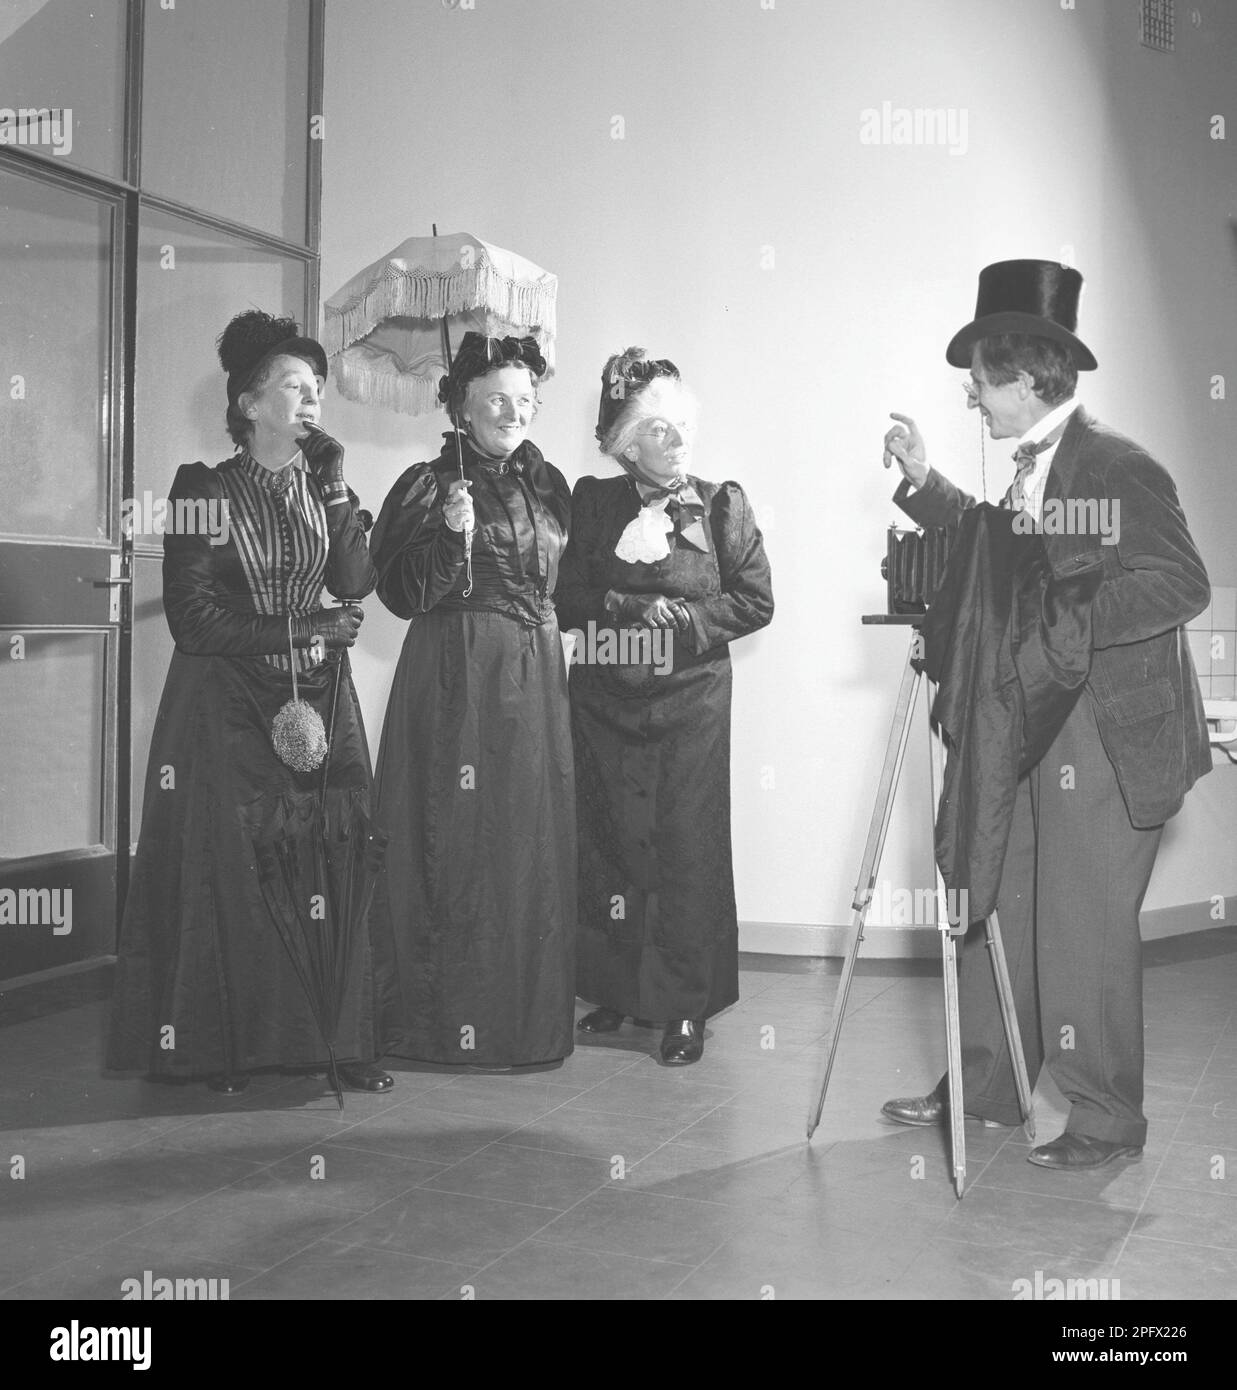 Trois femmes âgées vêtues de robes du début du siècle posent devant un photographe avec un appareil photo. Suède octobre 1953. Réf. SSMSAX000194L Banque D'Images